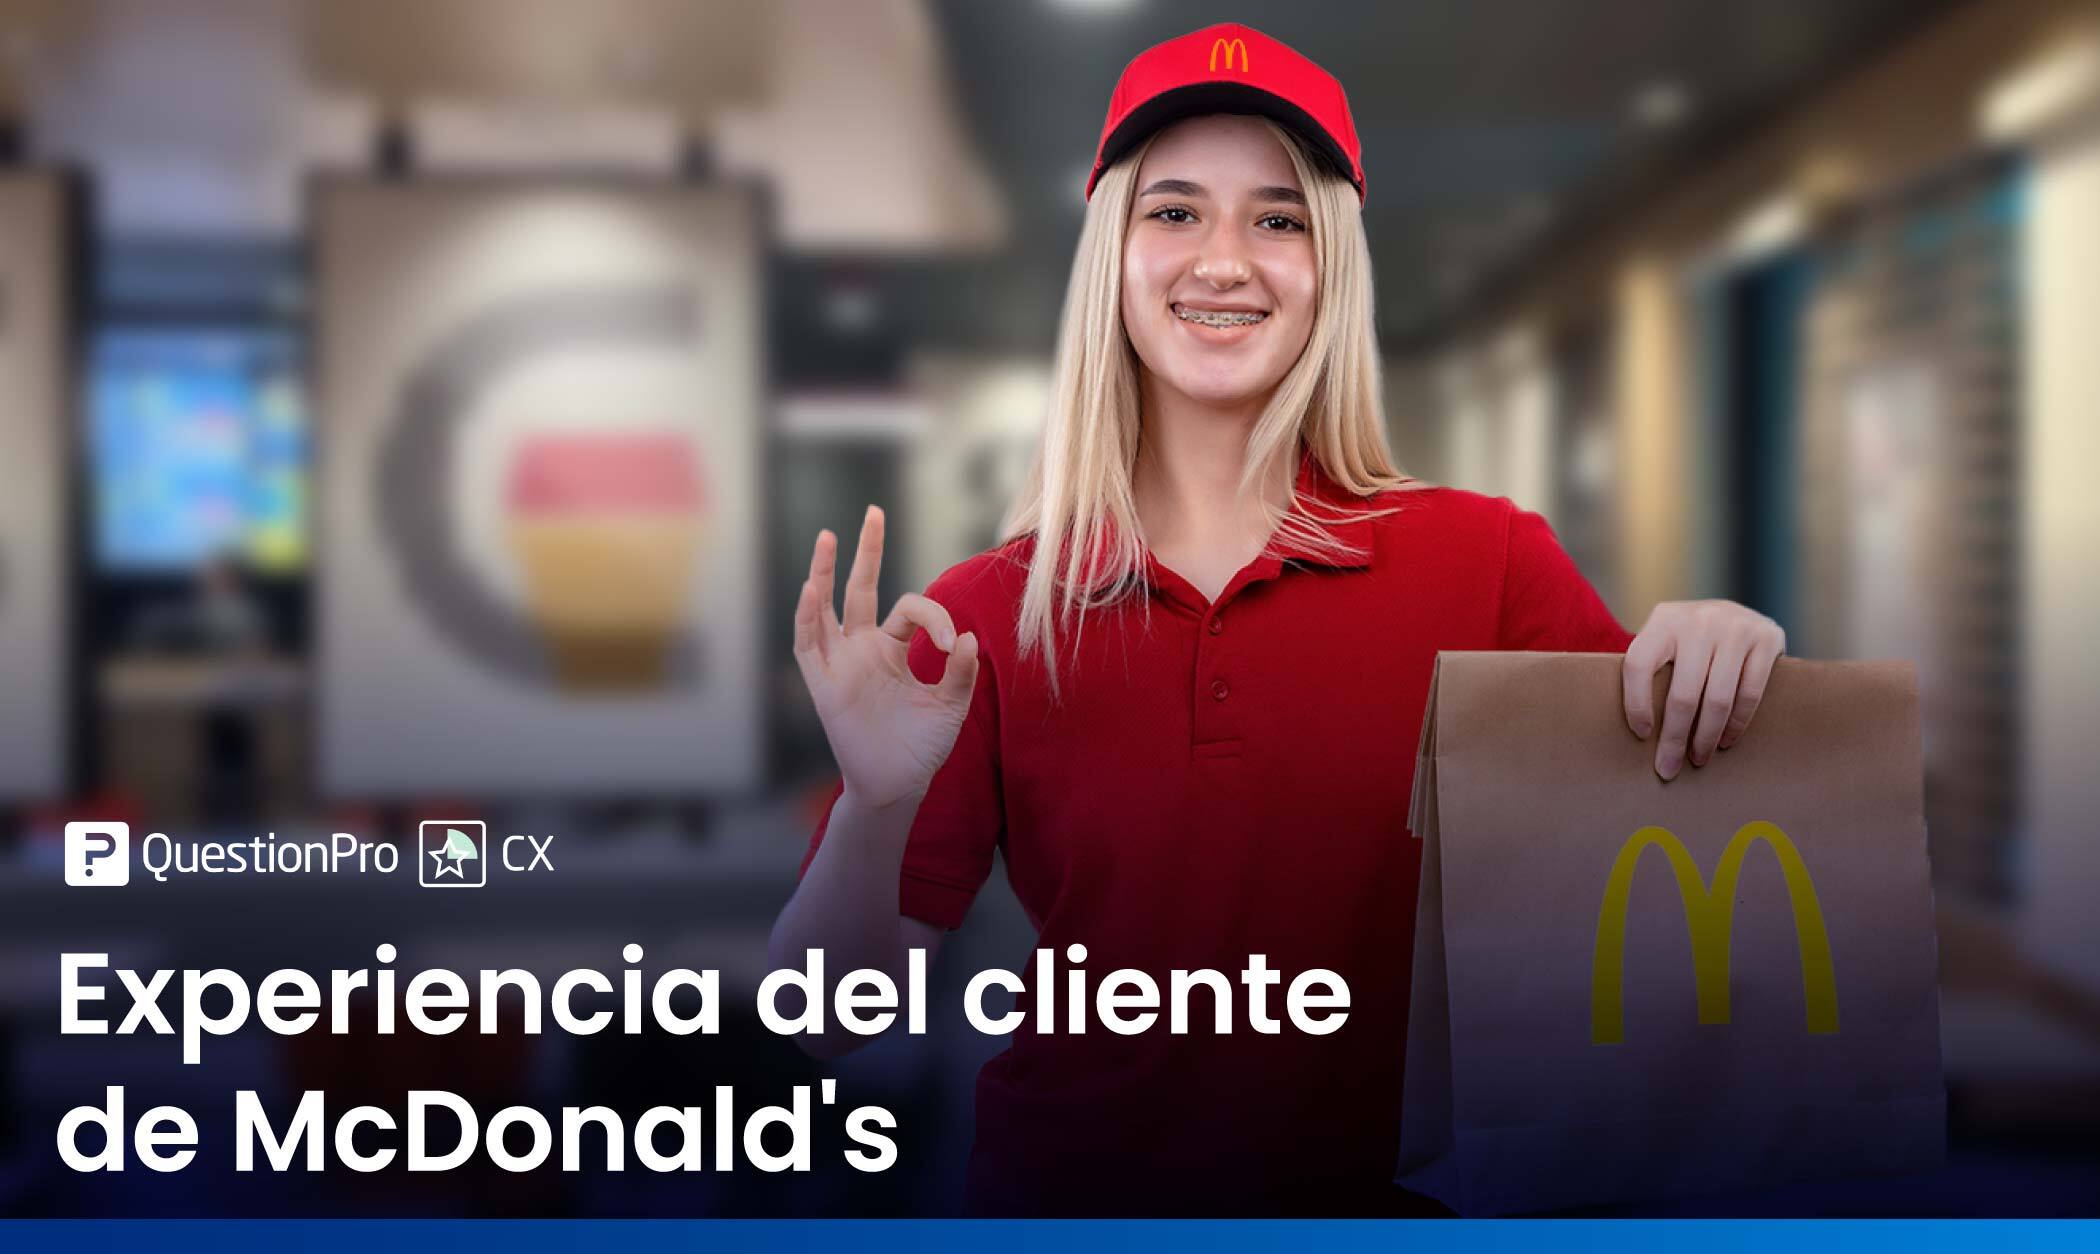 Experiencia del cliente de McDonald’s: Conoce sus mejores iniciativas